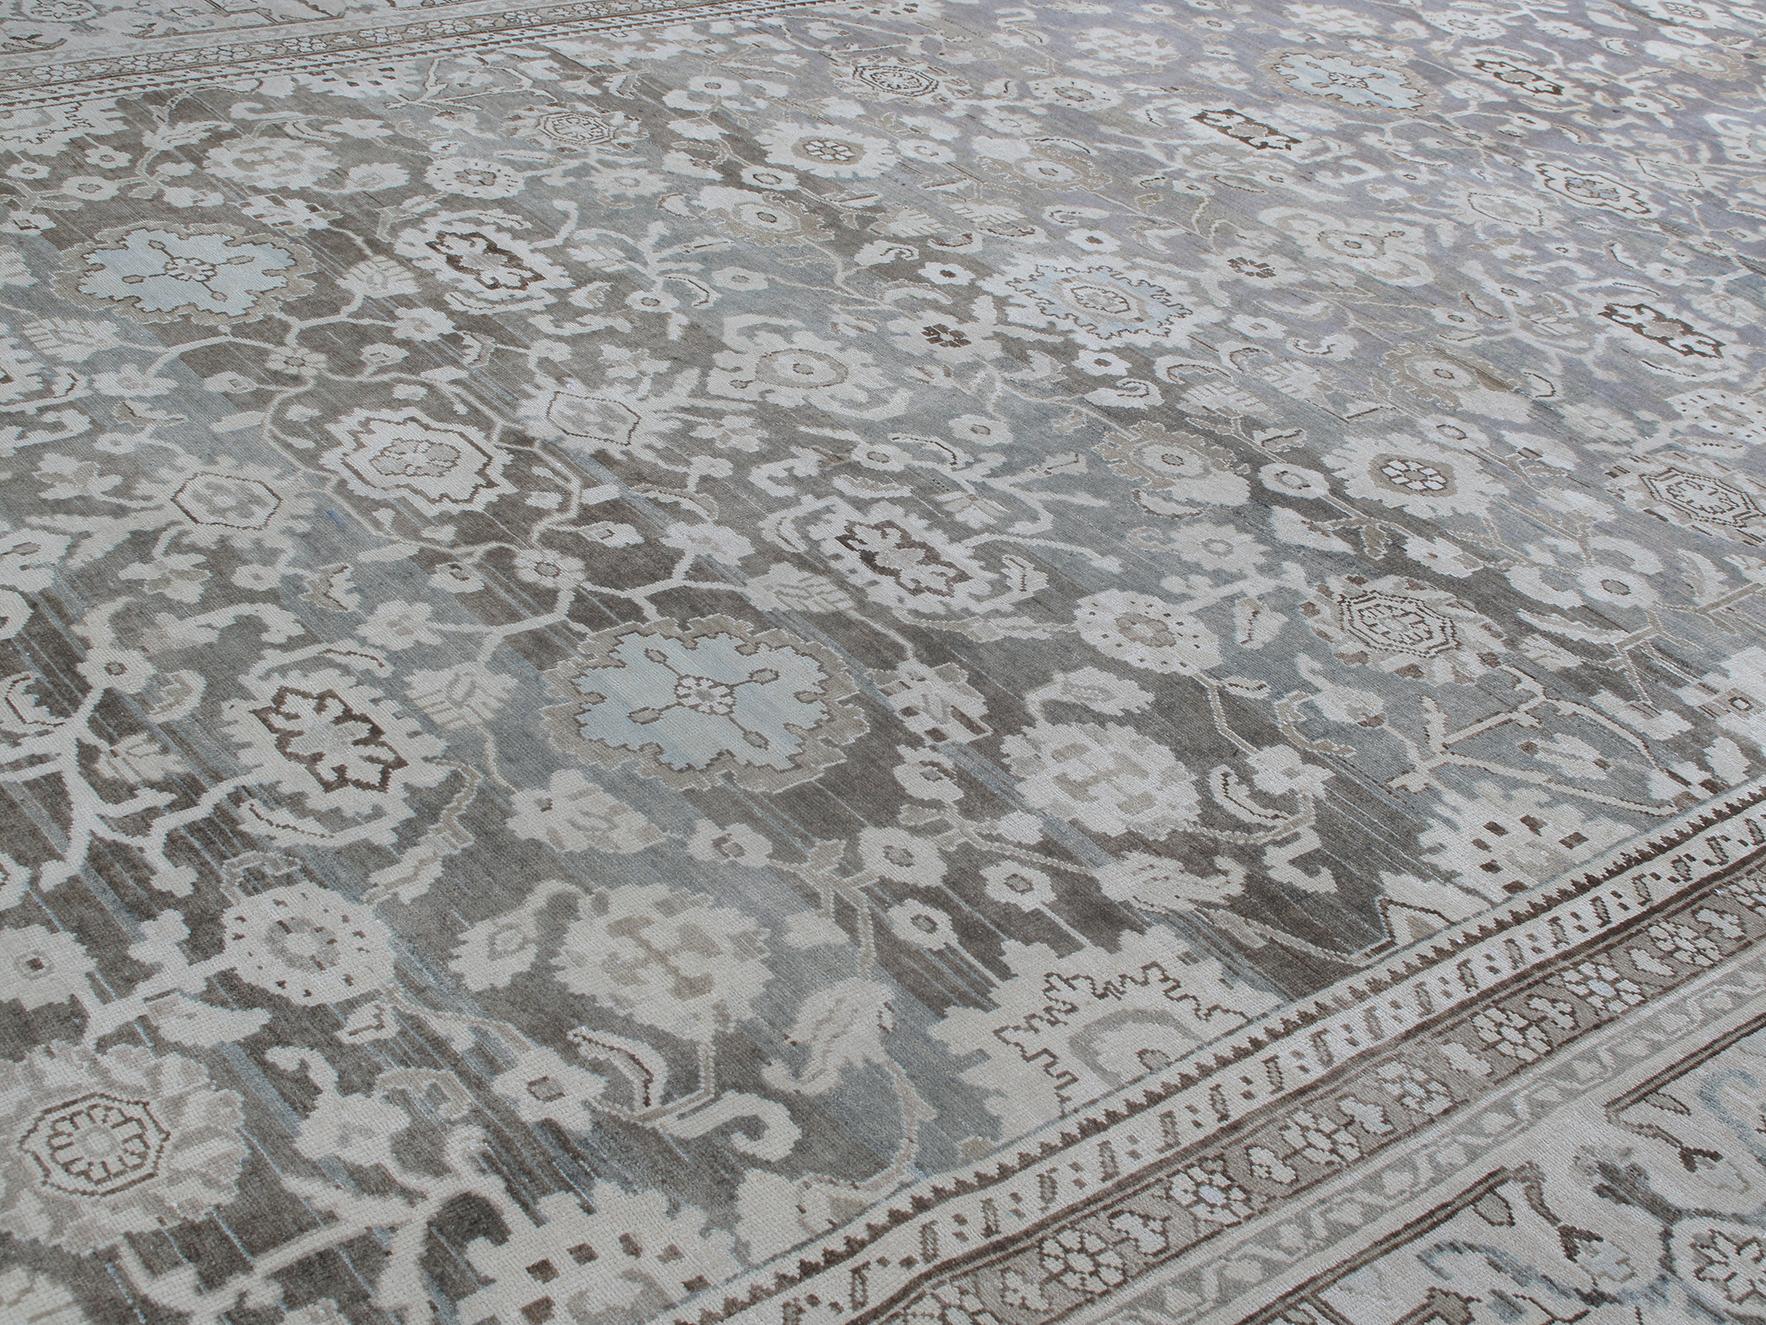 Ce tapis persan ancien de type Malayer est le fruit de nombreux voyages, de la passion et de la recherche de N A S I R I . Les tapis Malayer doivent leur nom à un important village de tissage de tapis situé dans le centre-ouest de l'Iran. Le village